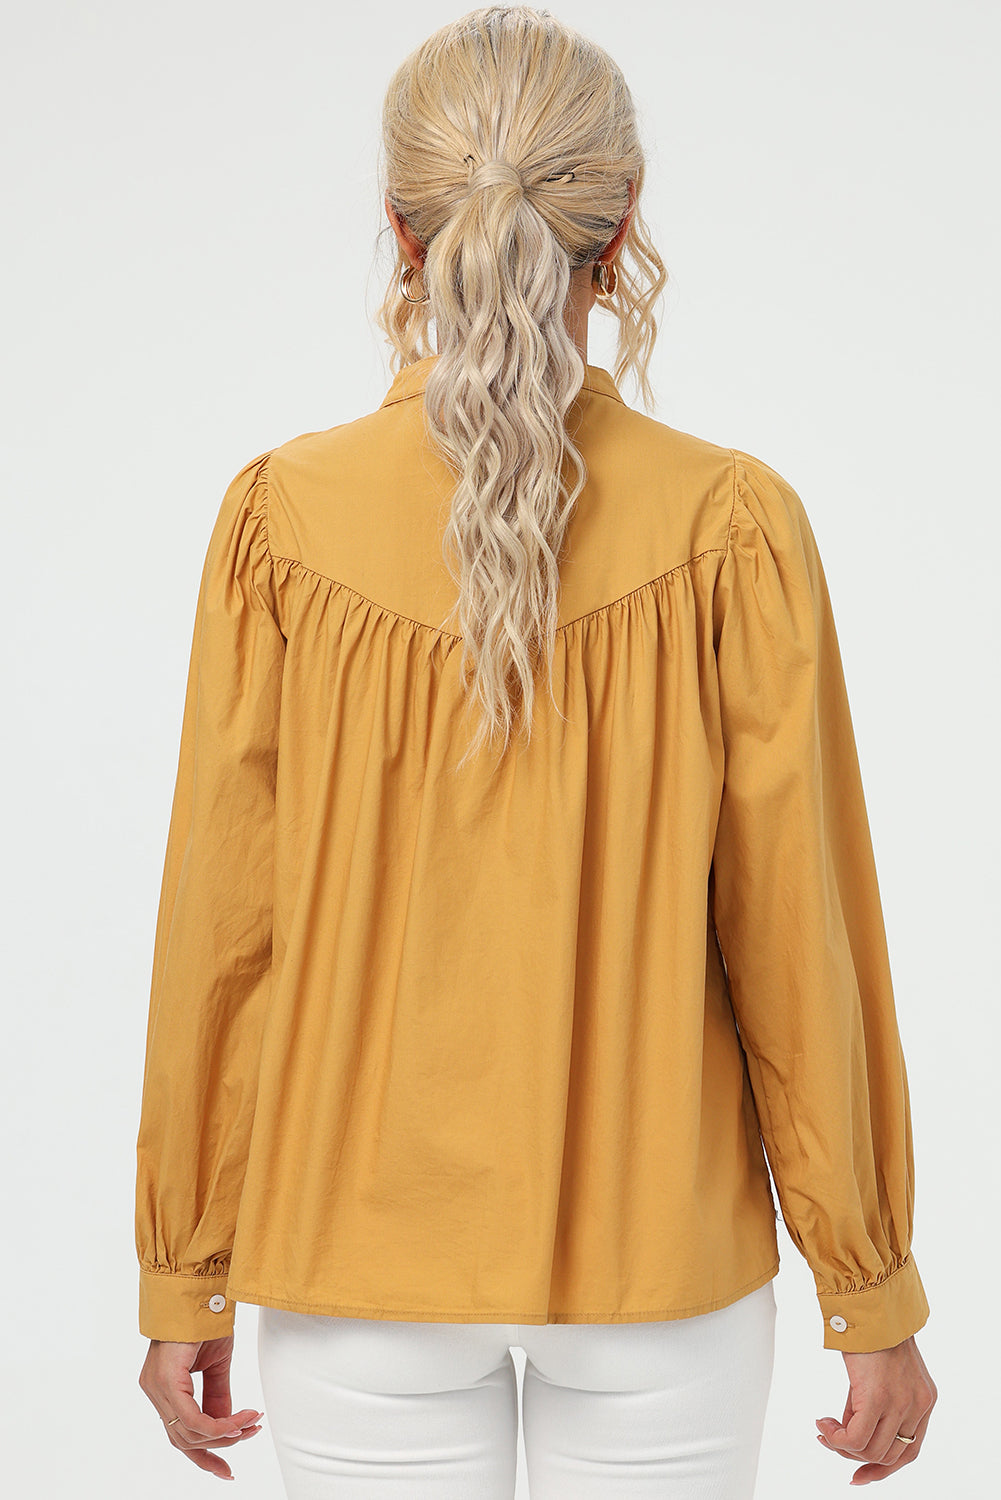 TEEK - Mustard Ruched Button Up Long Sleeve Shirt TOPS TEEK Trend   